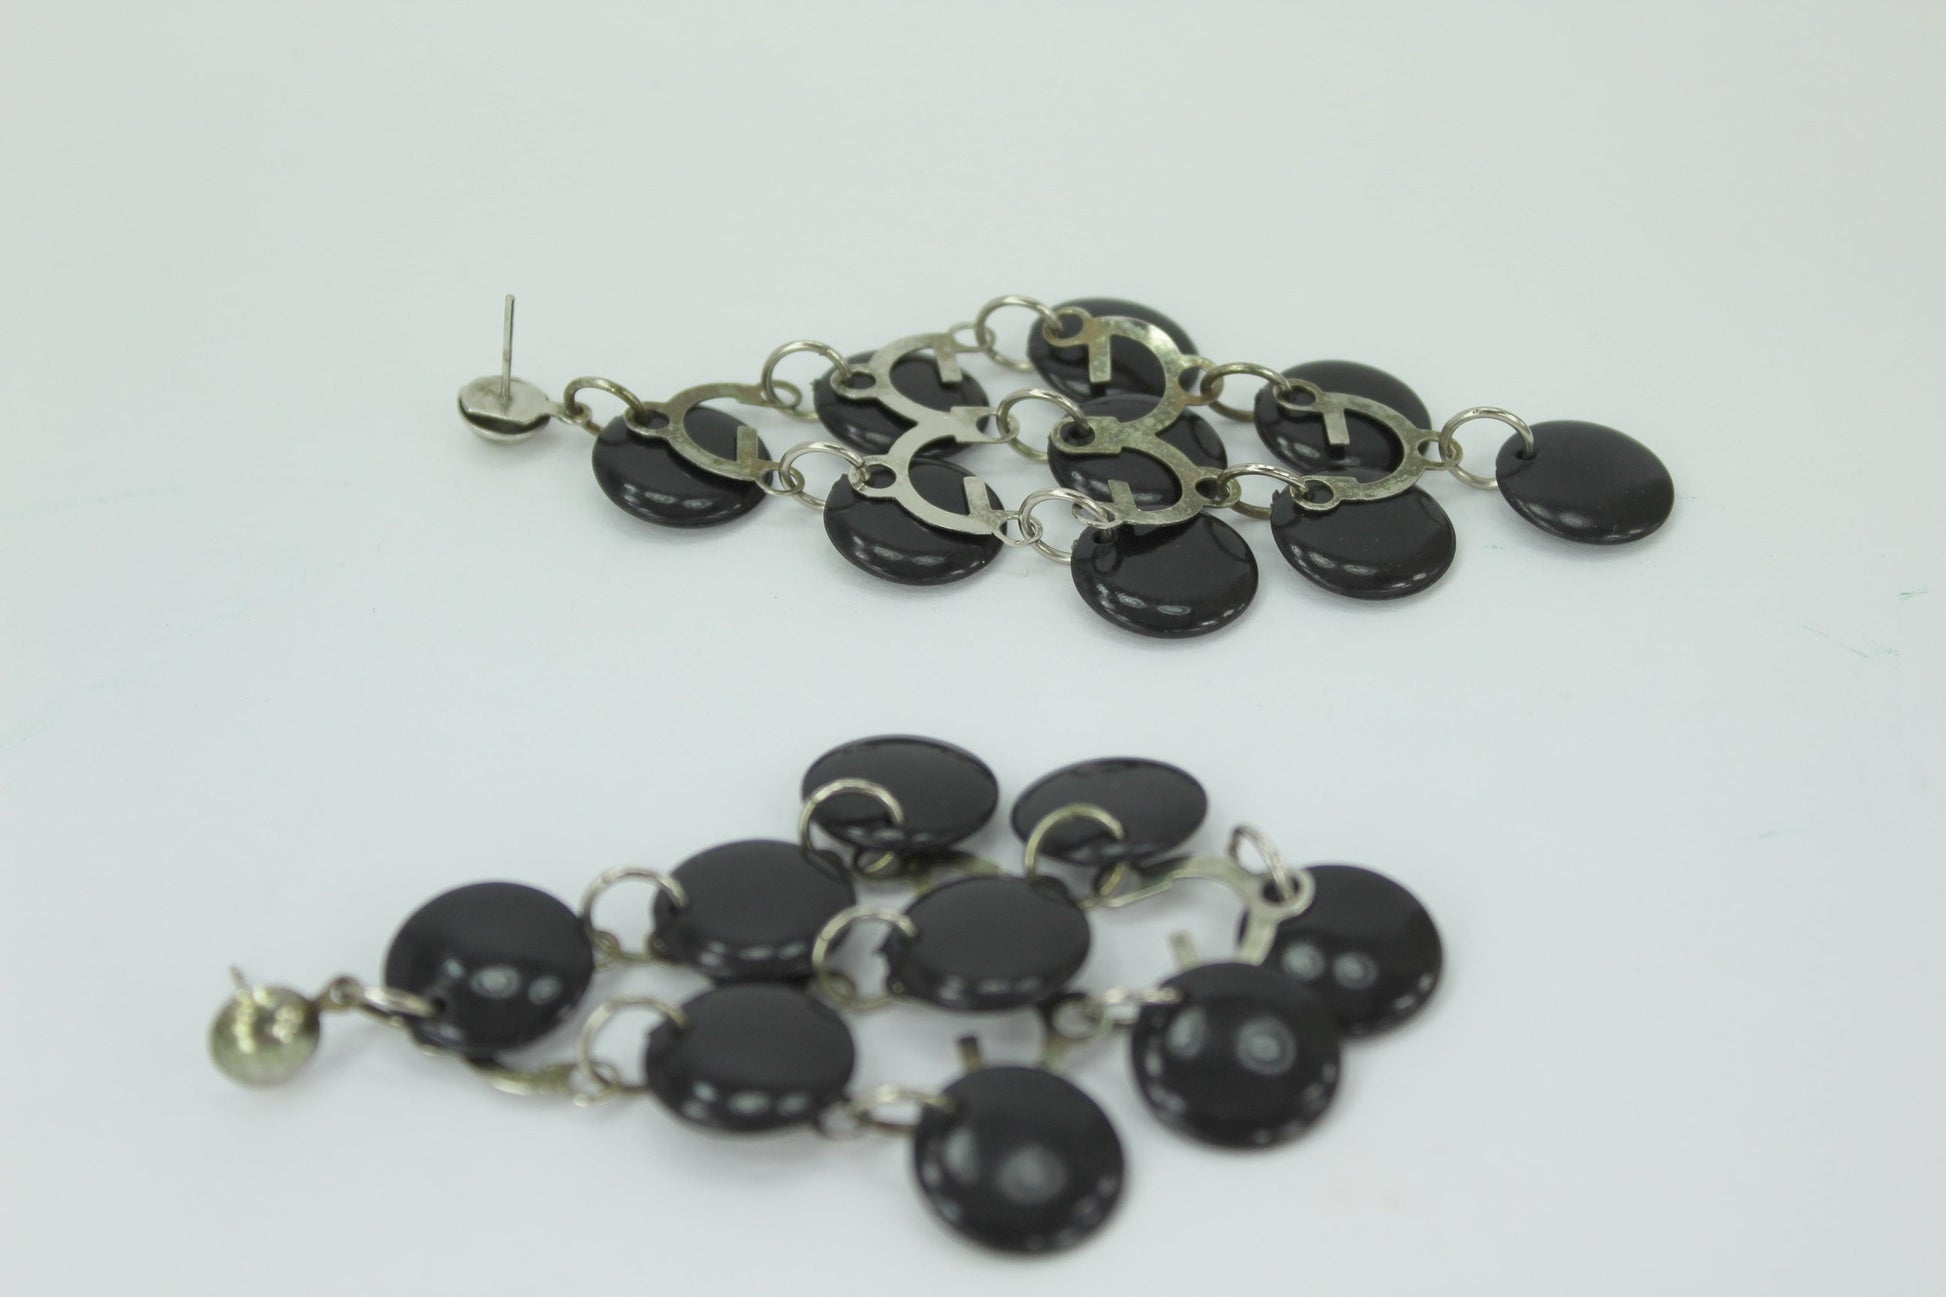 Long 4" Chandelier Earrings Post Black Discs Silver Tone Rings Fantastic Look runway 70s